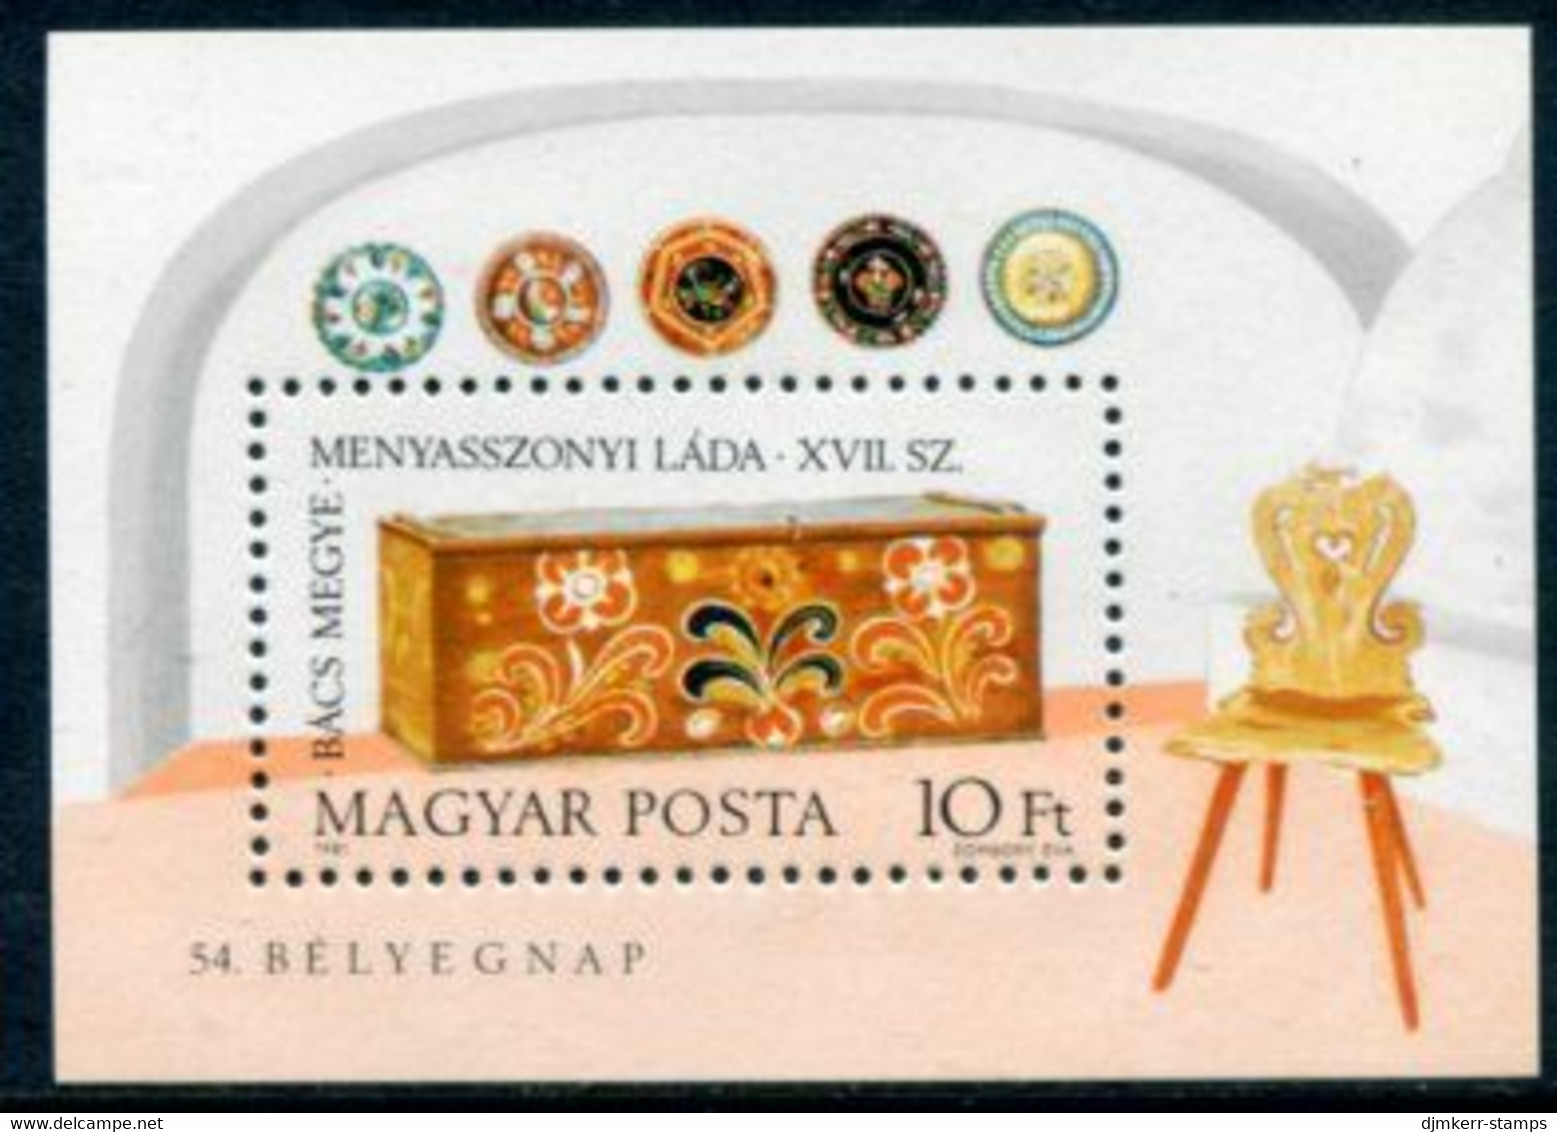 HUNGARY 1981 Stamp Day Block MNH / **.  Michel Block 151 - Ongebruikt